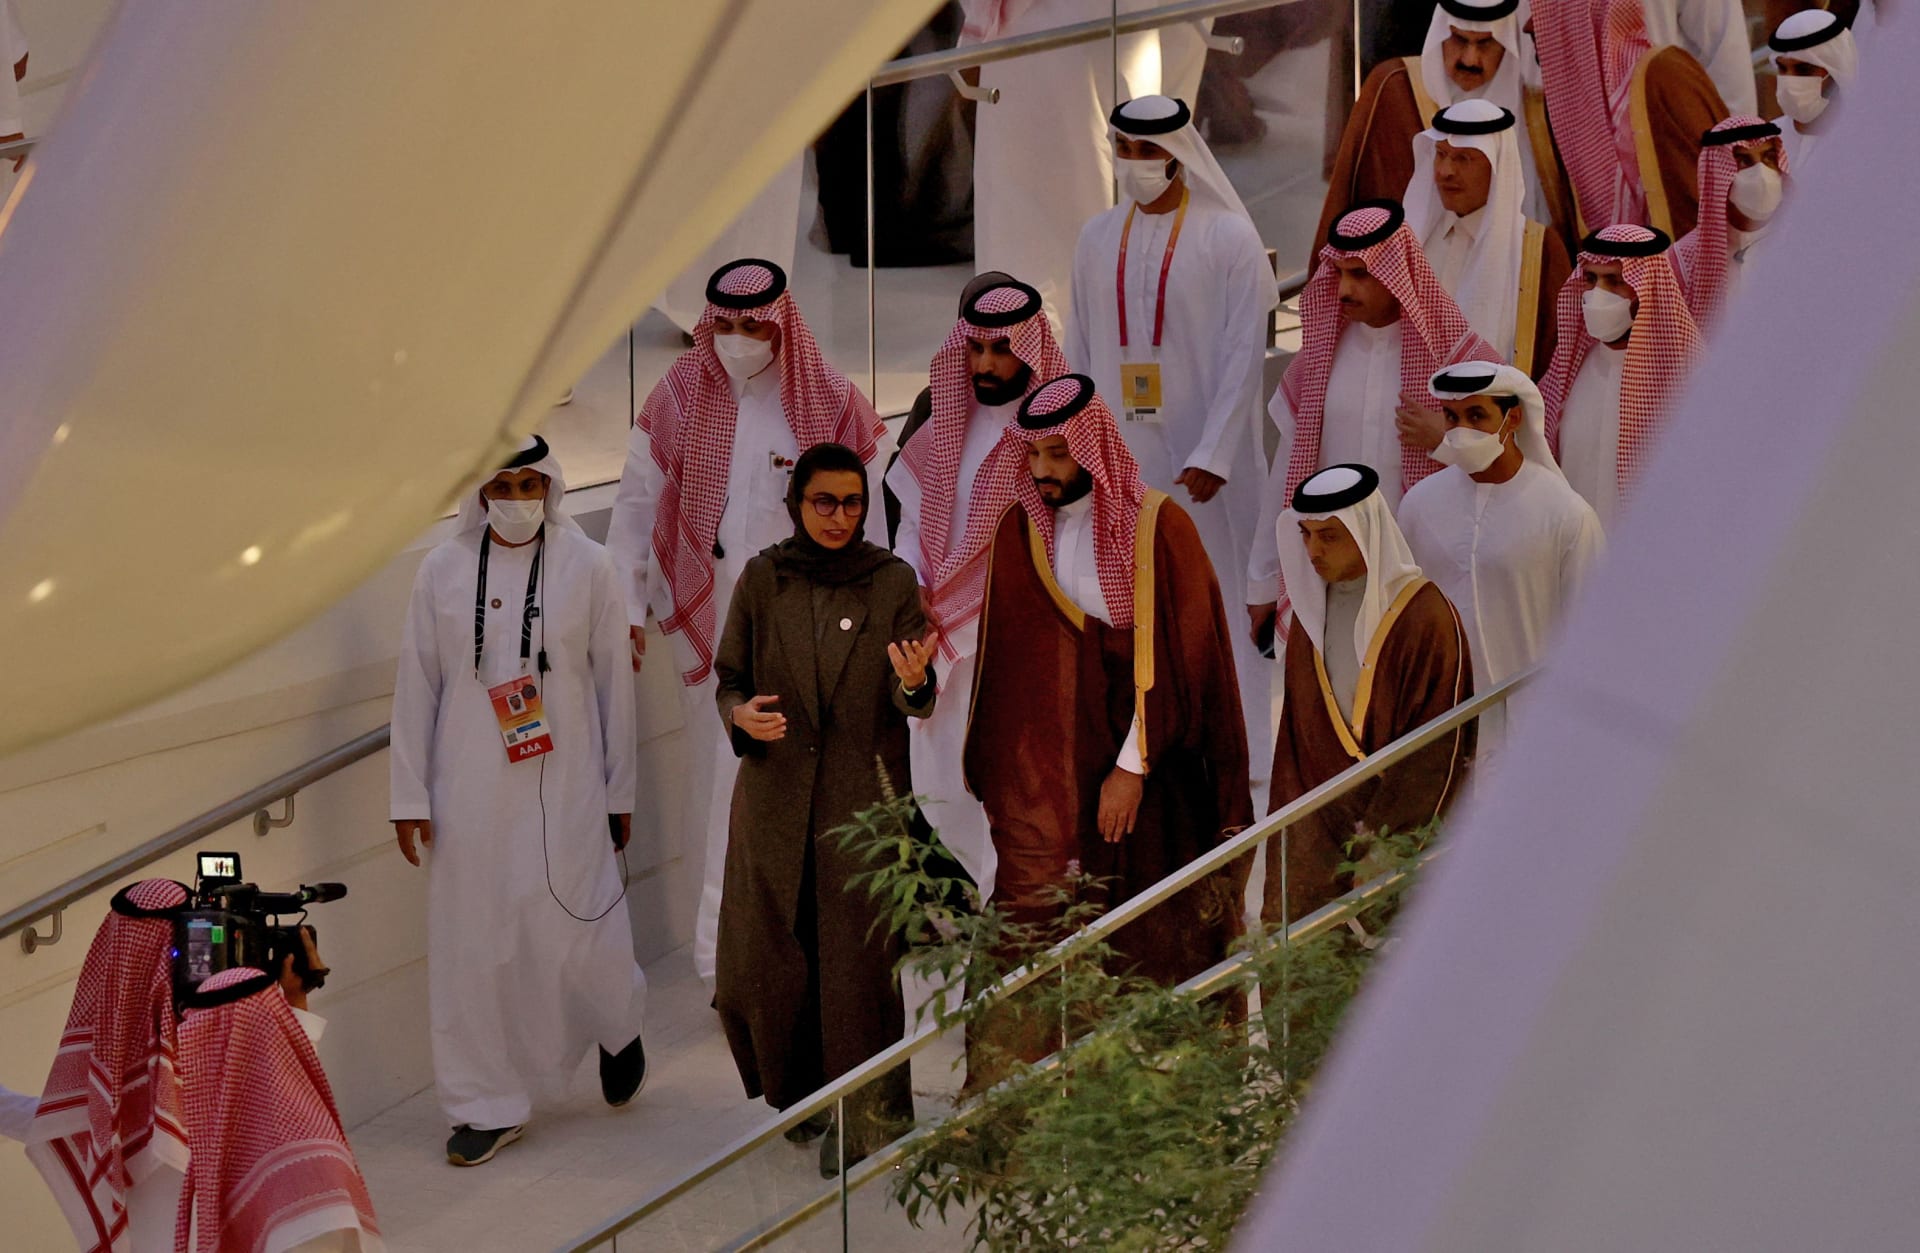 بالفيديو.. لحظة وصول ولي عهد السعودية إلى معرض إكسبو وترحيب الحضور به: "حي الله أبو سلمان"